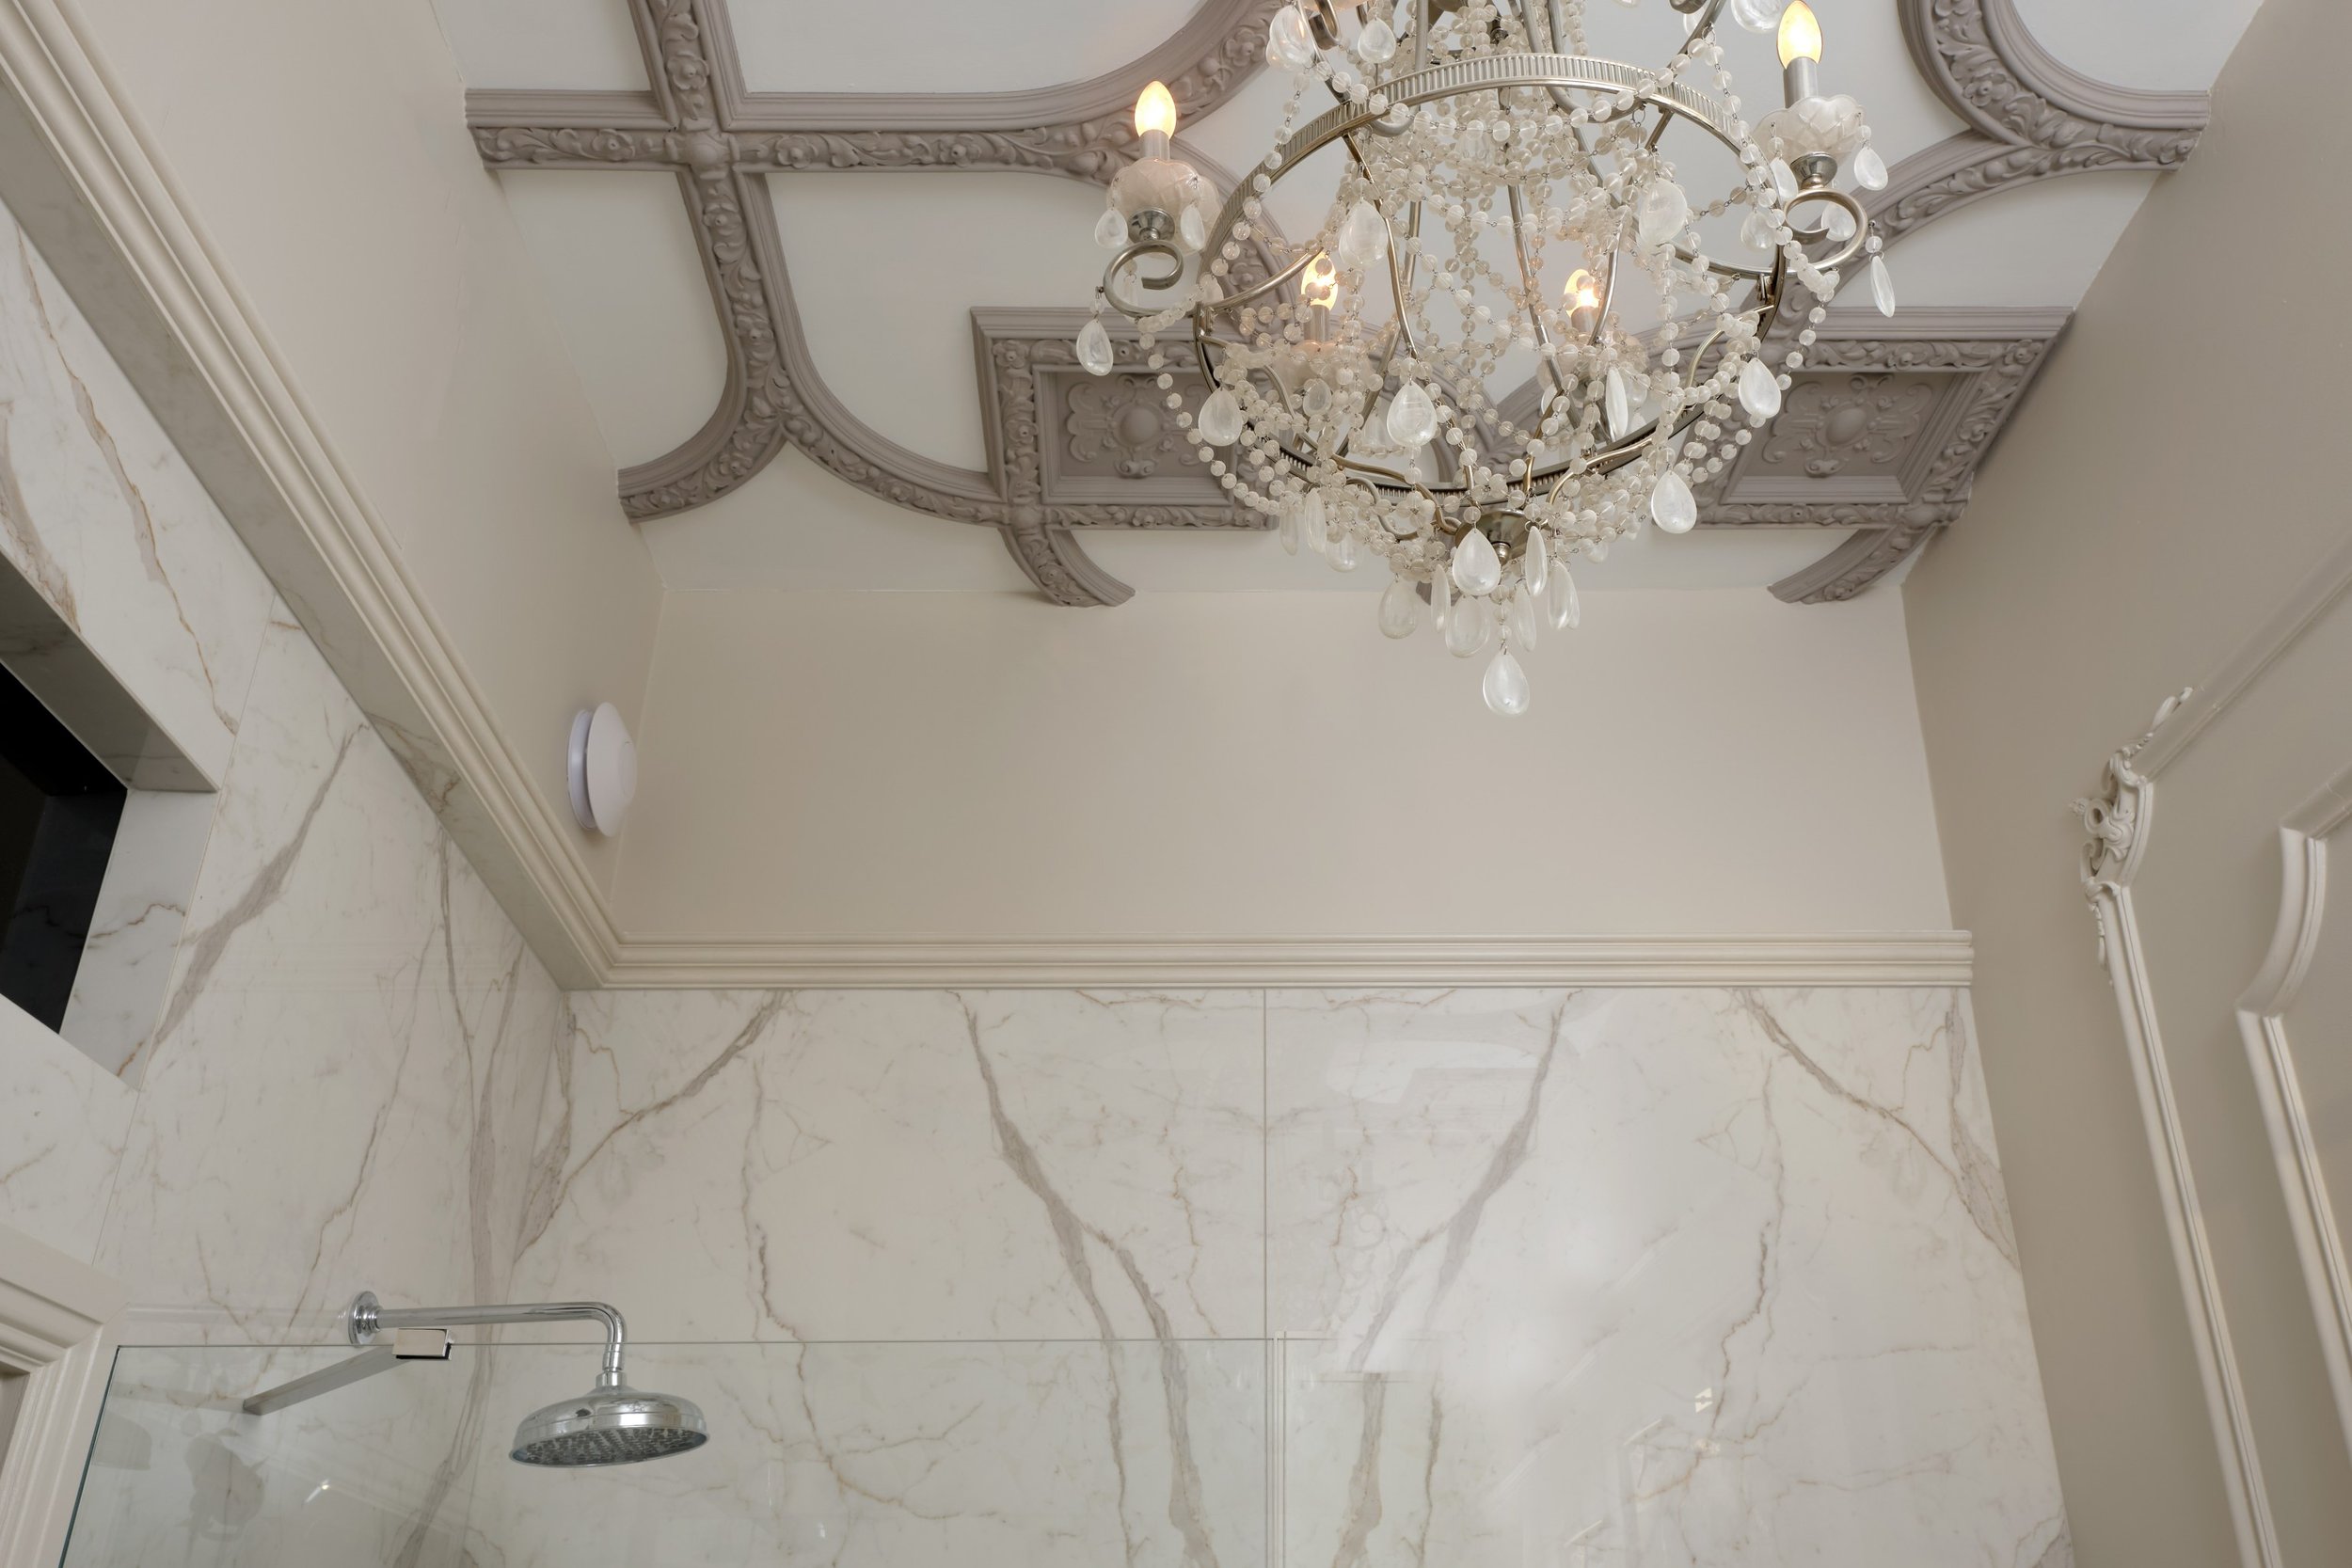 ceiling-of-luxury-bathroom-with-chandelier.jpg